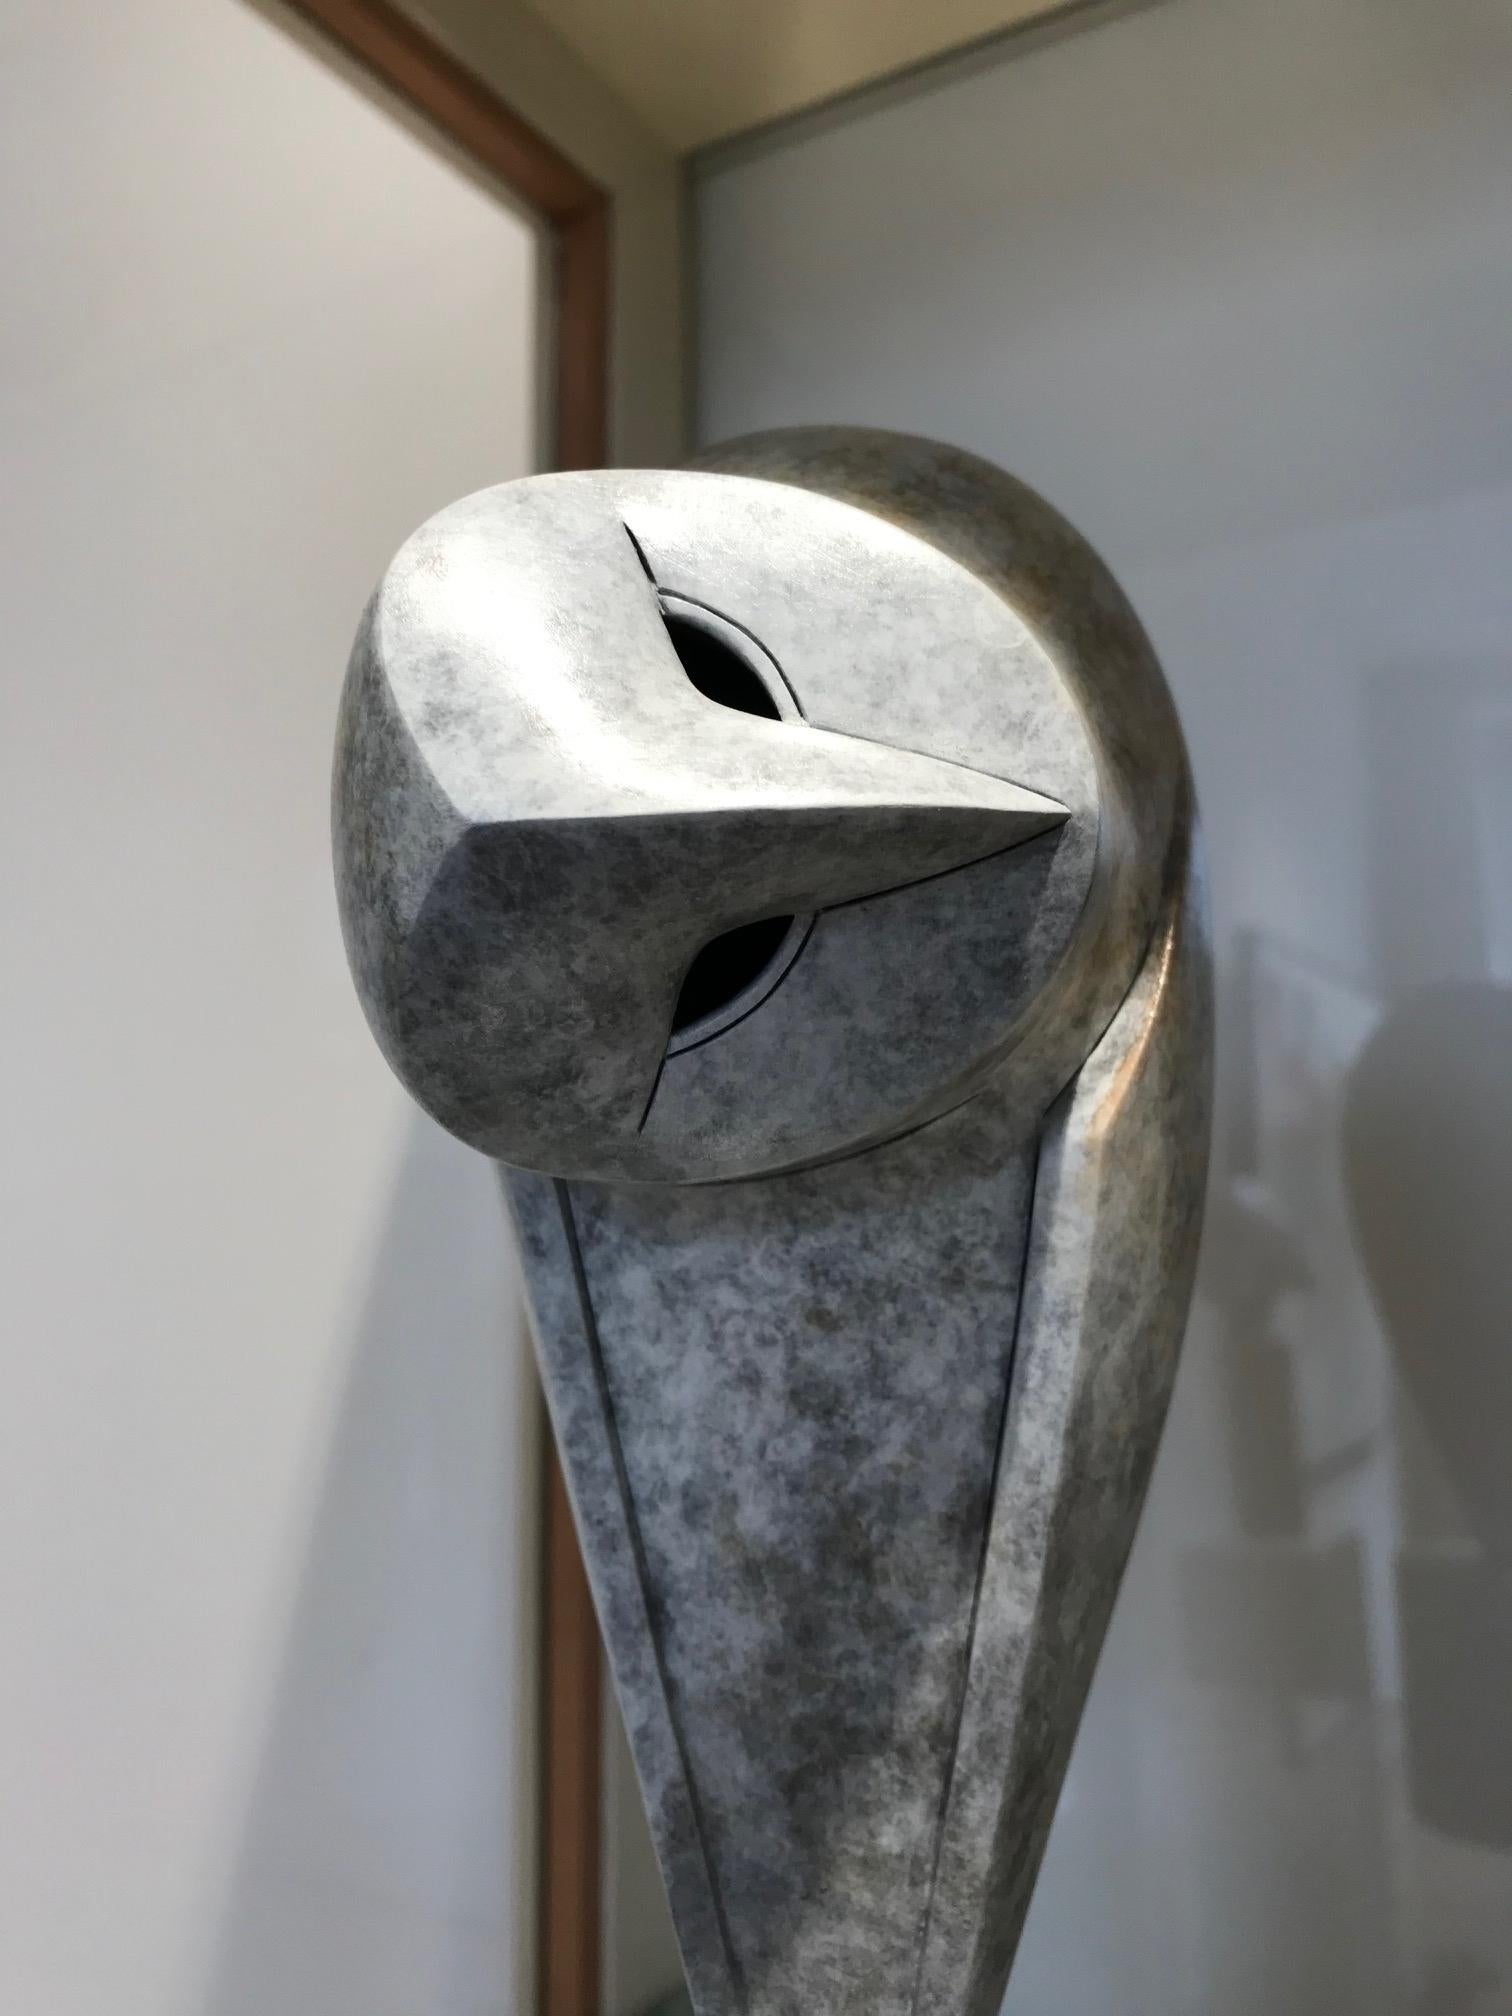 Le sculpteur britannique Anthony Theakston (1965), qui s'inspire de la forme et du mouvement des oiseaux, les simplifie et omet de plus en plus de détails jusqu'à ce qu'il ne reste plus que l'essence de l'animal. Les oiseaux stylisés sont réduits à